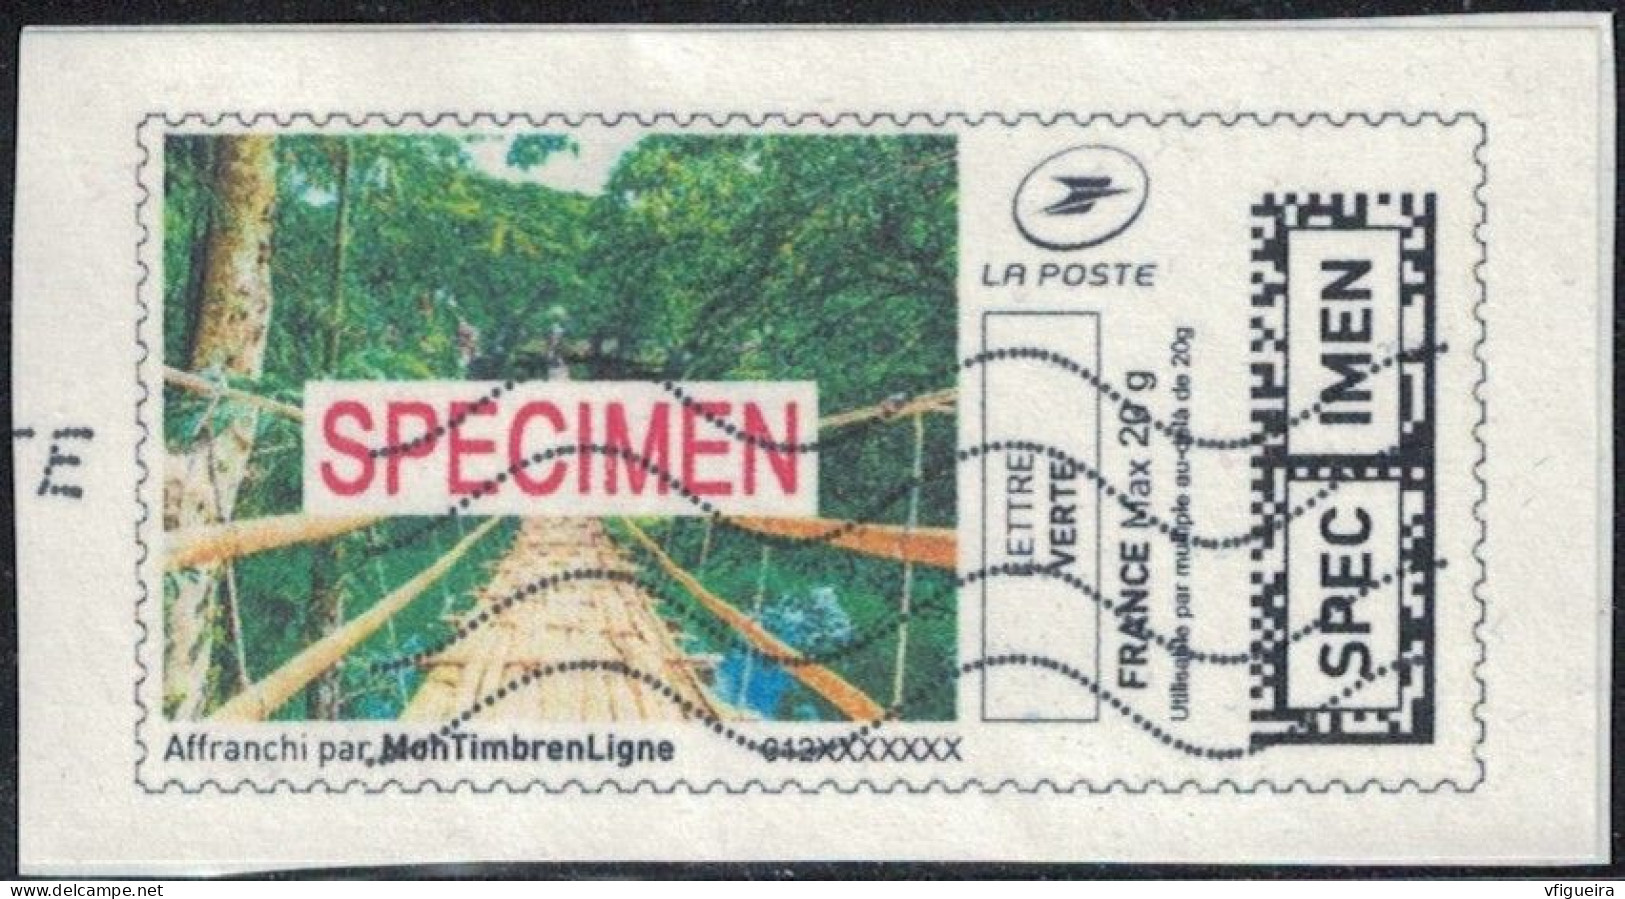 France Vignette Sur Fragment Used Mon Timbre En Ligne Spécimen Affranchie SU - Francobolli Stampabili (Montimbrenligne)